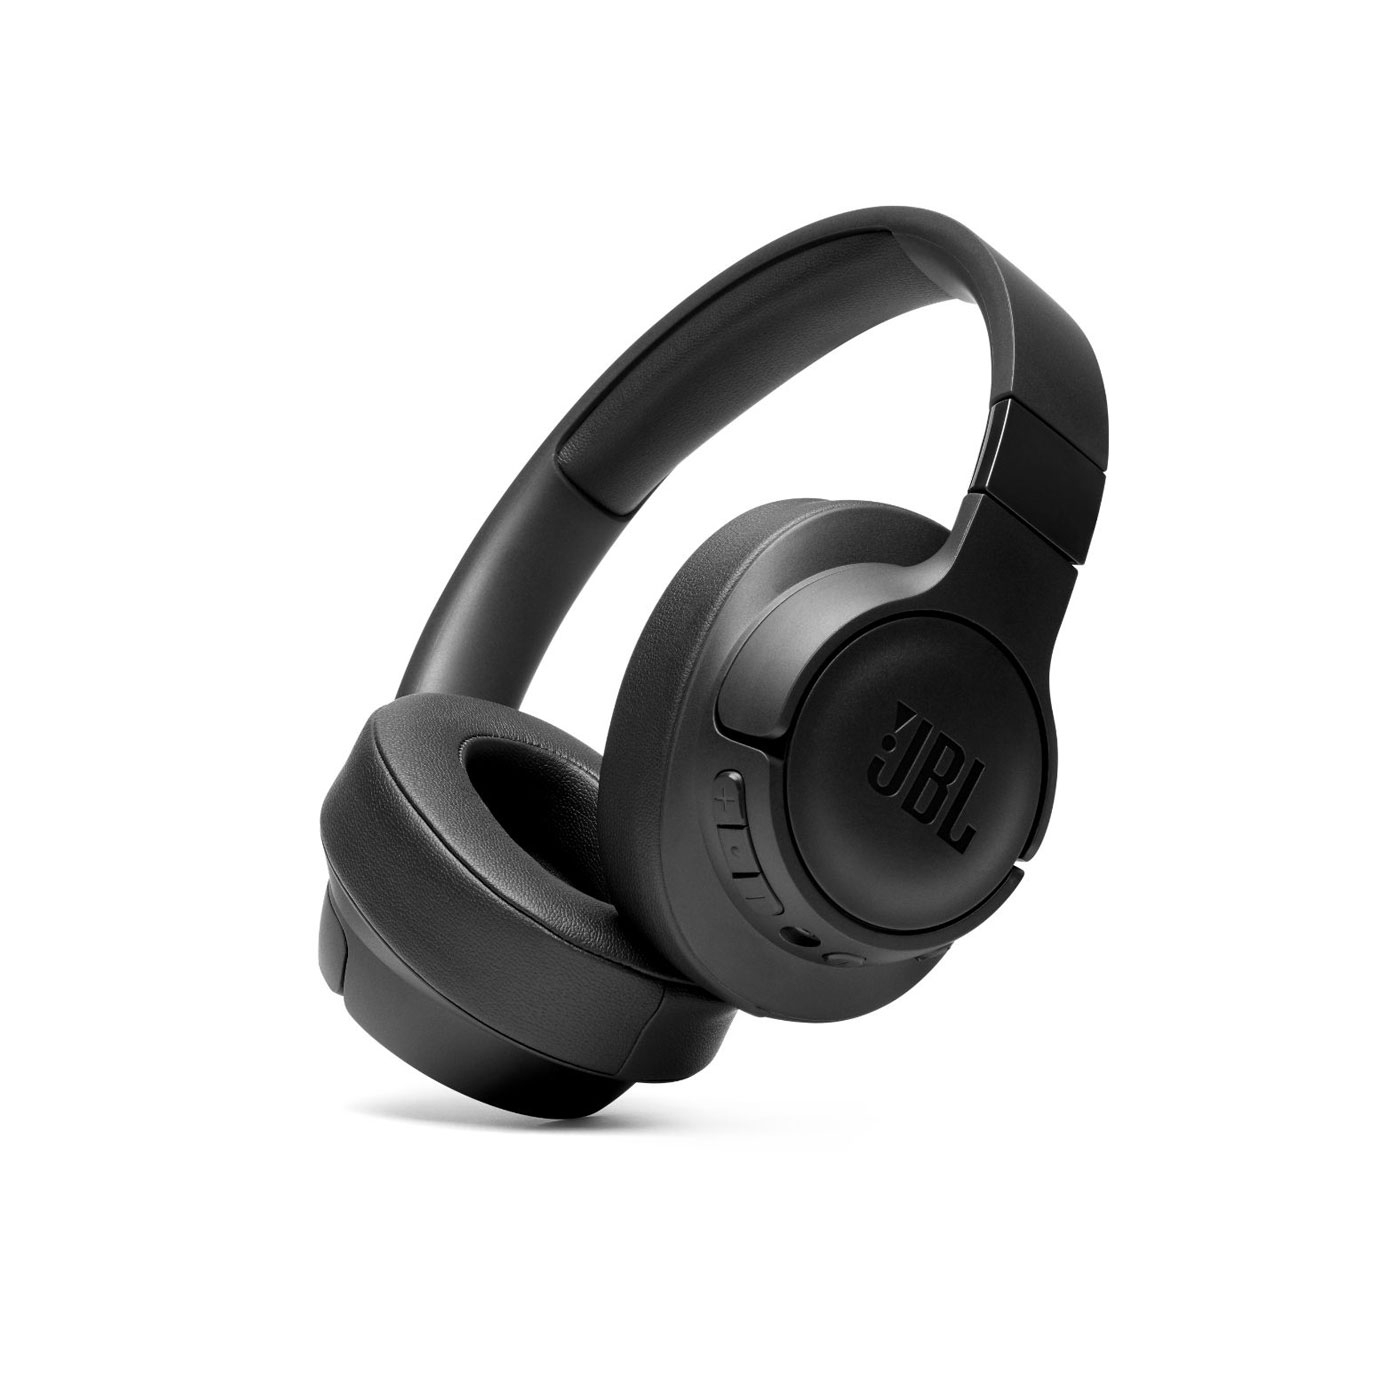 Audífonos de Diadema JBL Inalámbricos Bluetooth Over Ear T760 Cancelación de Ruido Negro